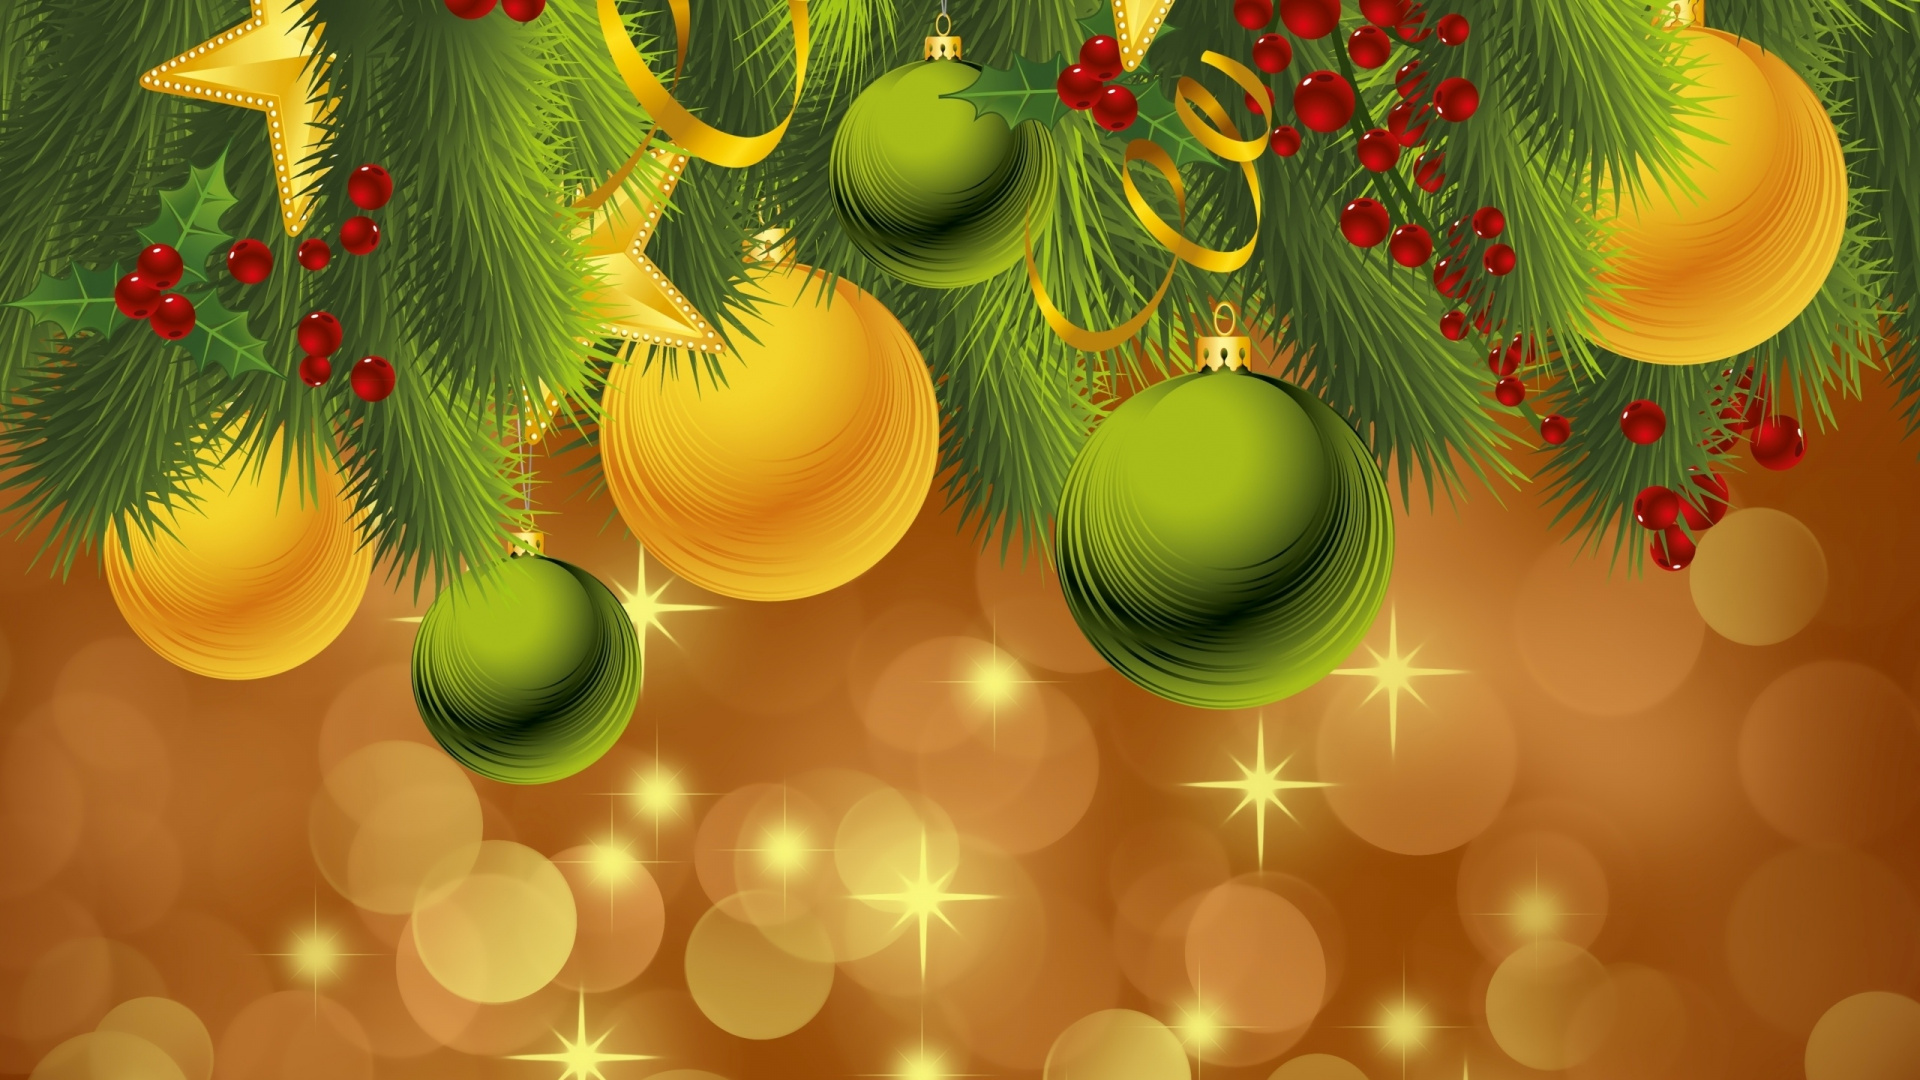 El Día De Navidad, Nochevieja, Adorno de Navidad, Verde, Decoración de la Navidad. Wallpaper in 1920x1080 Resolution